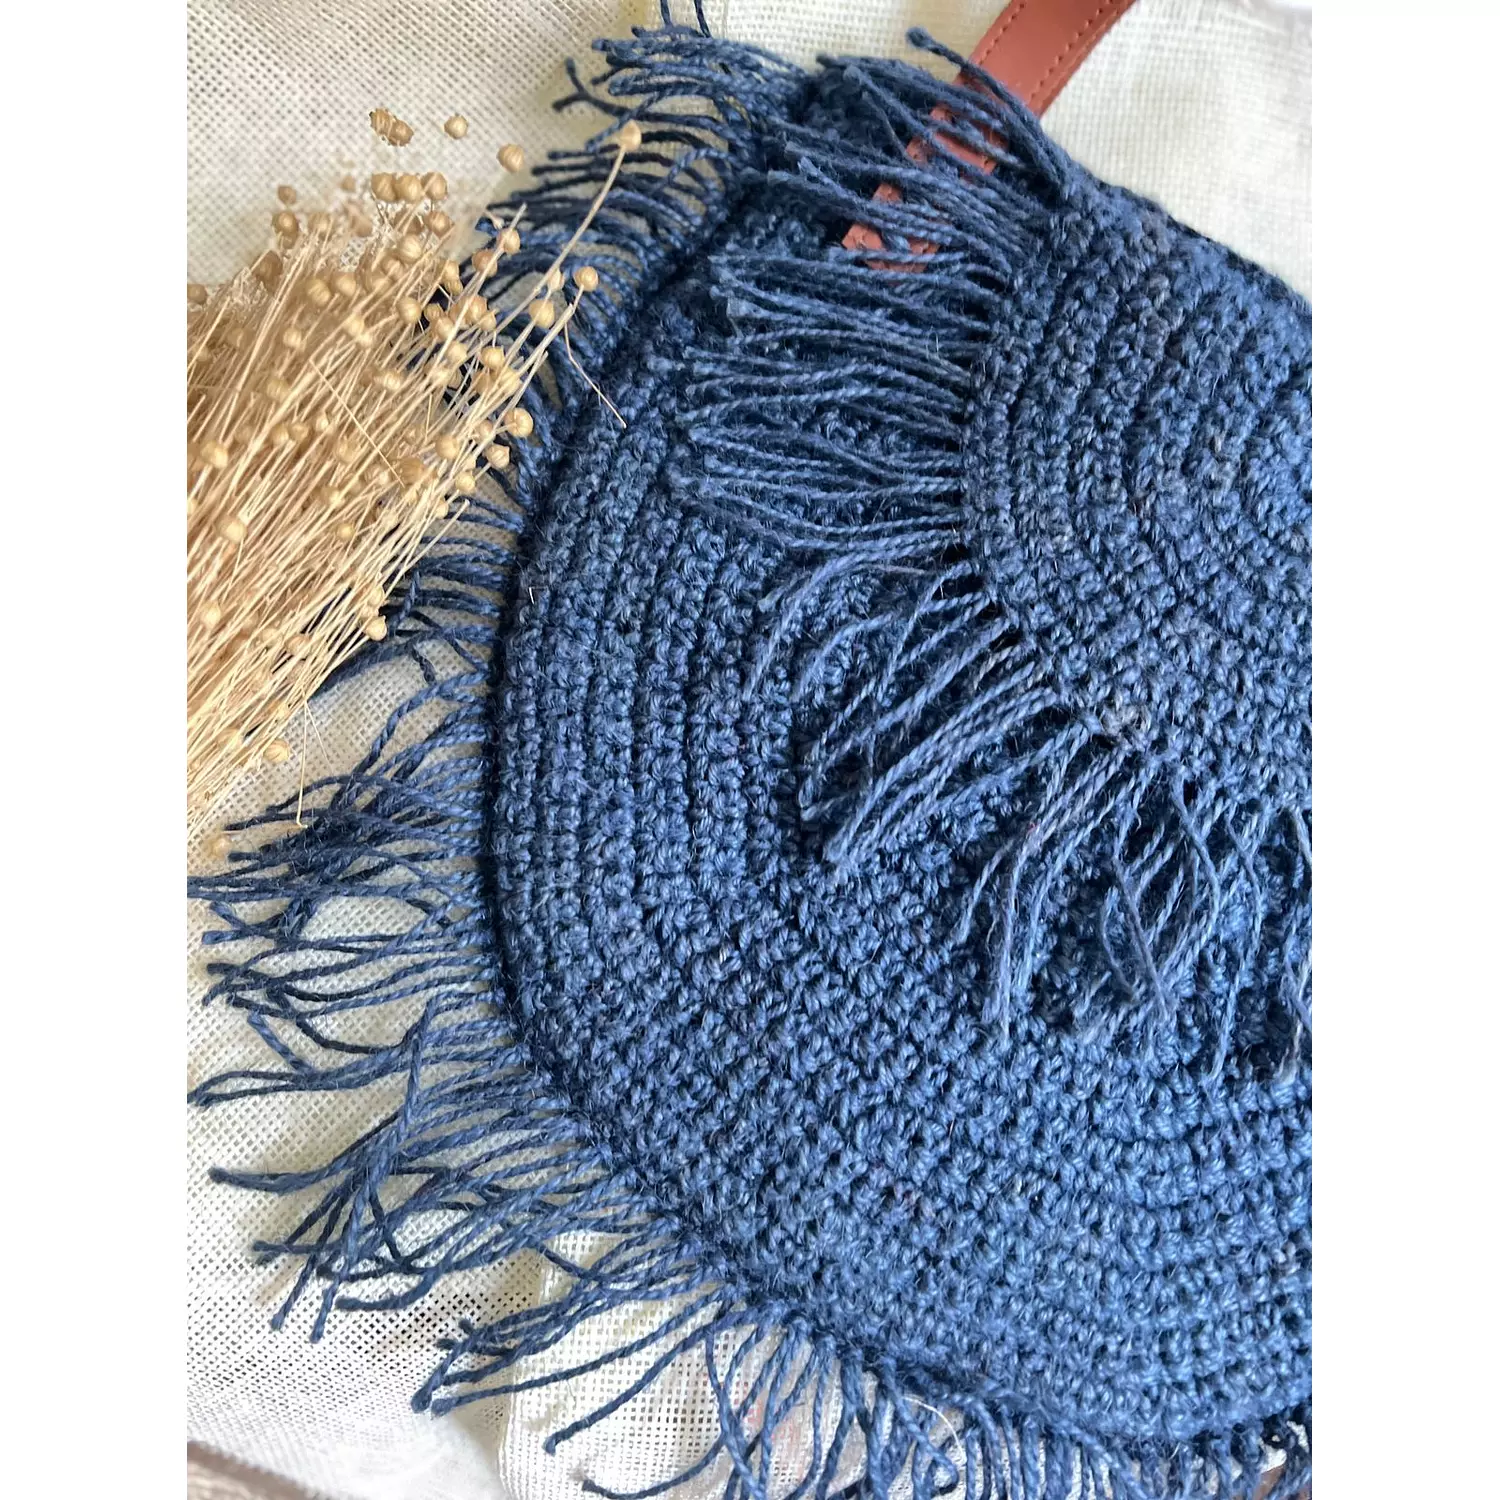 Crochet Handbag 1